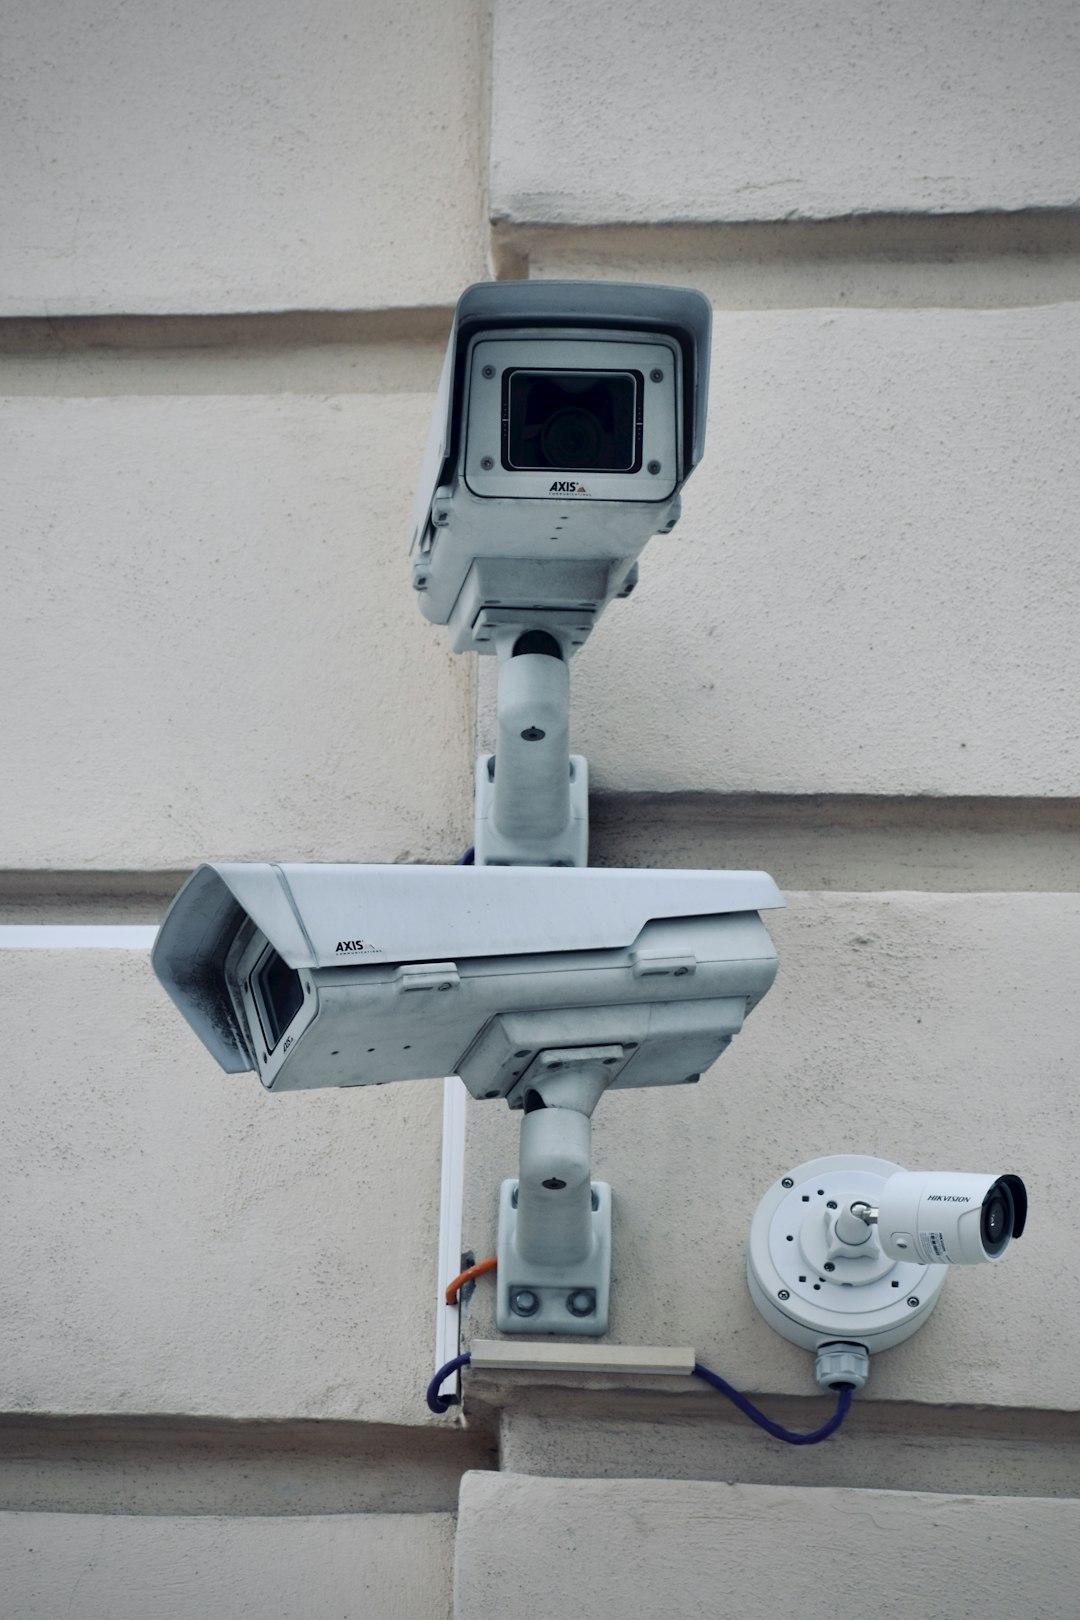 Surveillance: